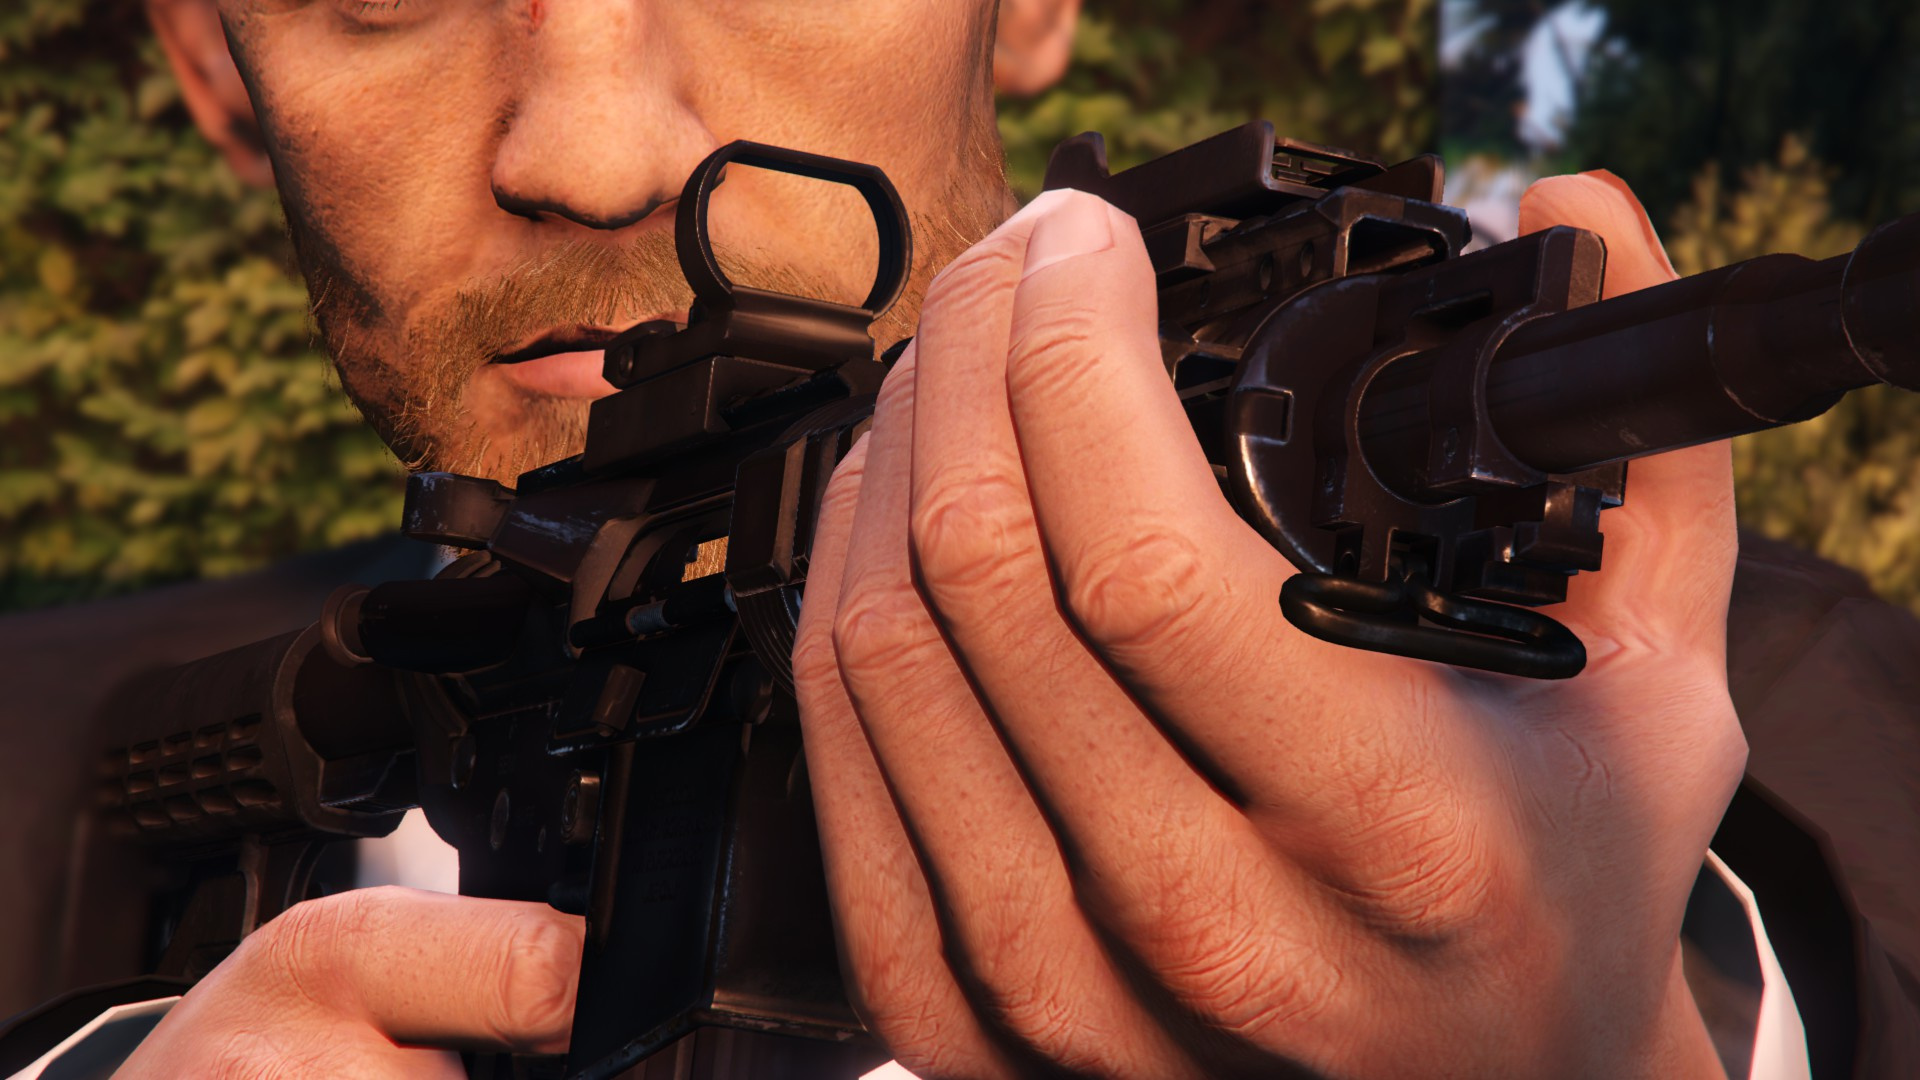 AR-C Far Cry 5 - GTA5-Mods.com